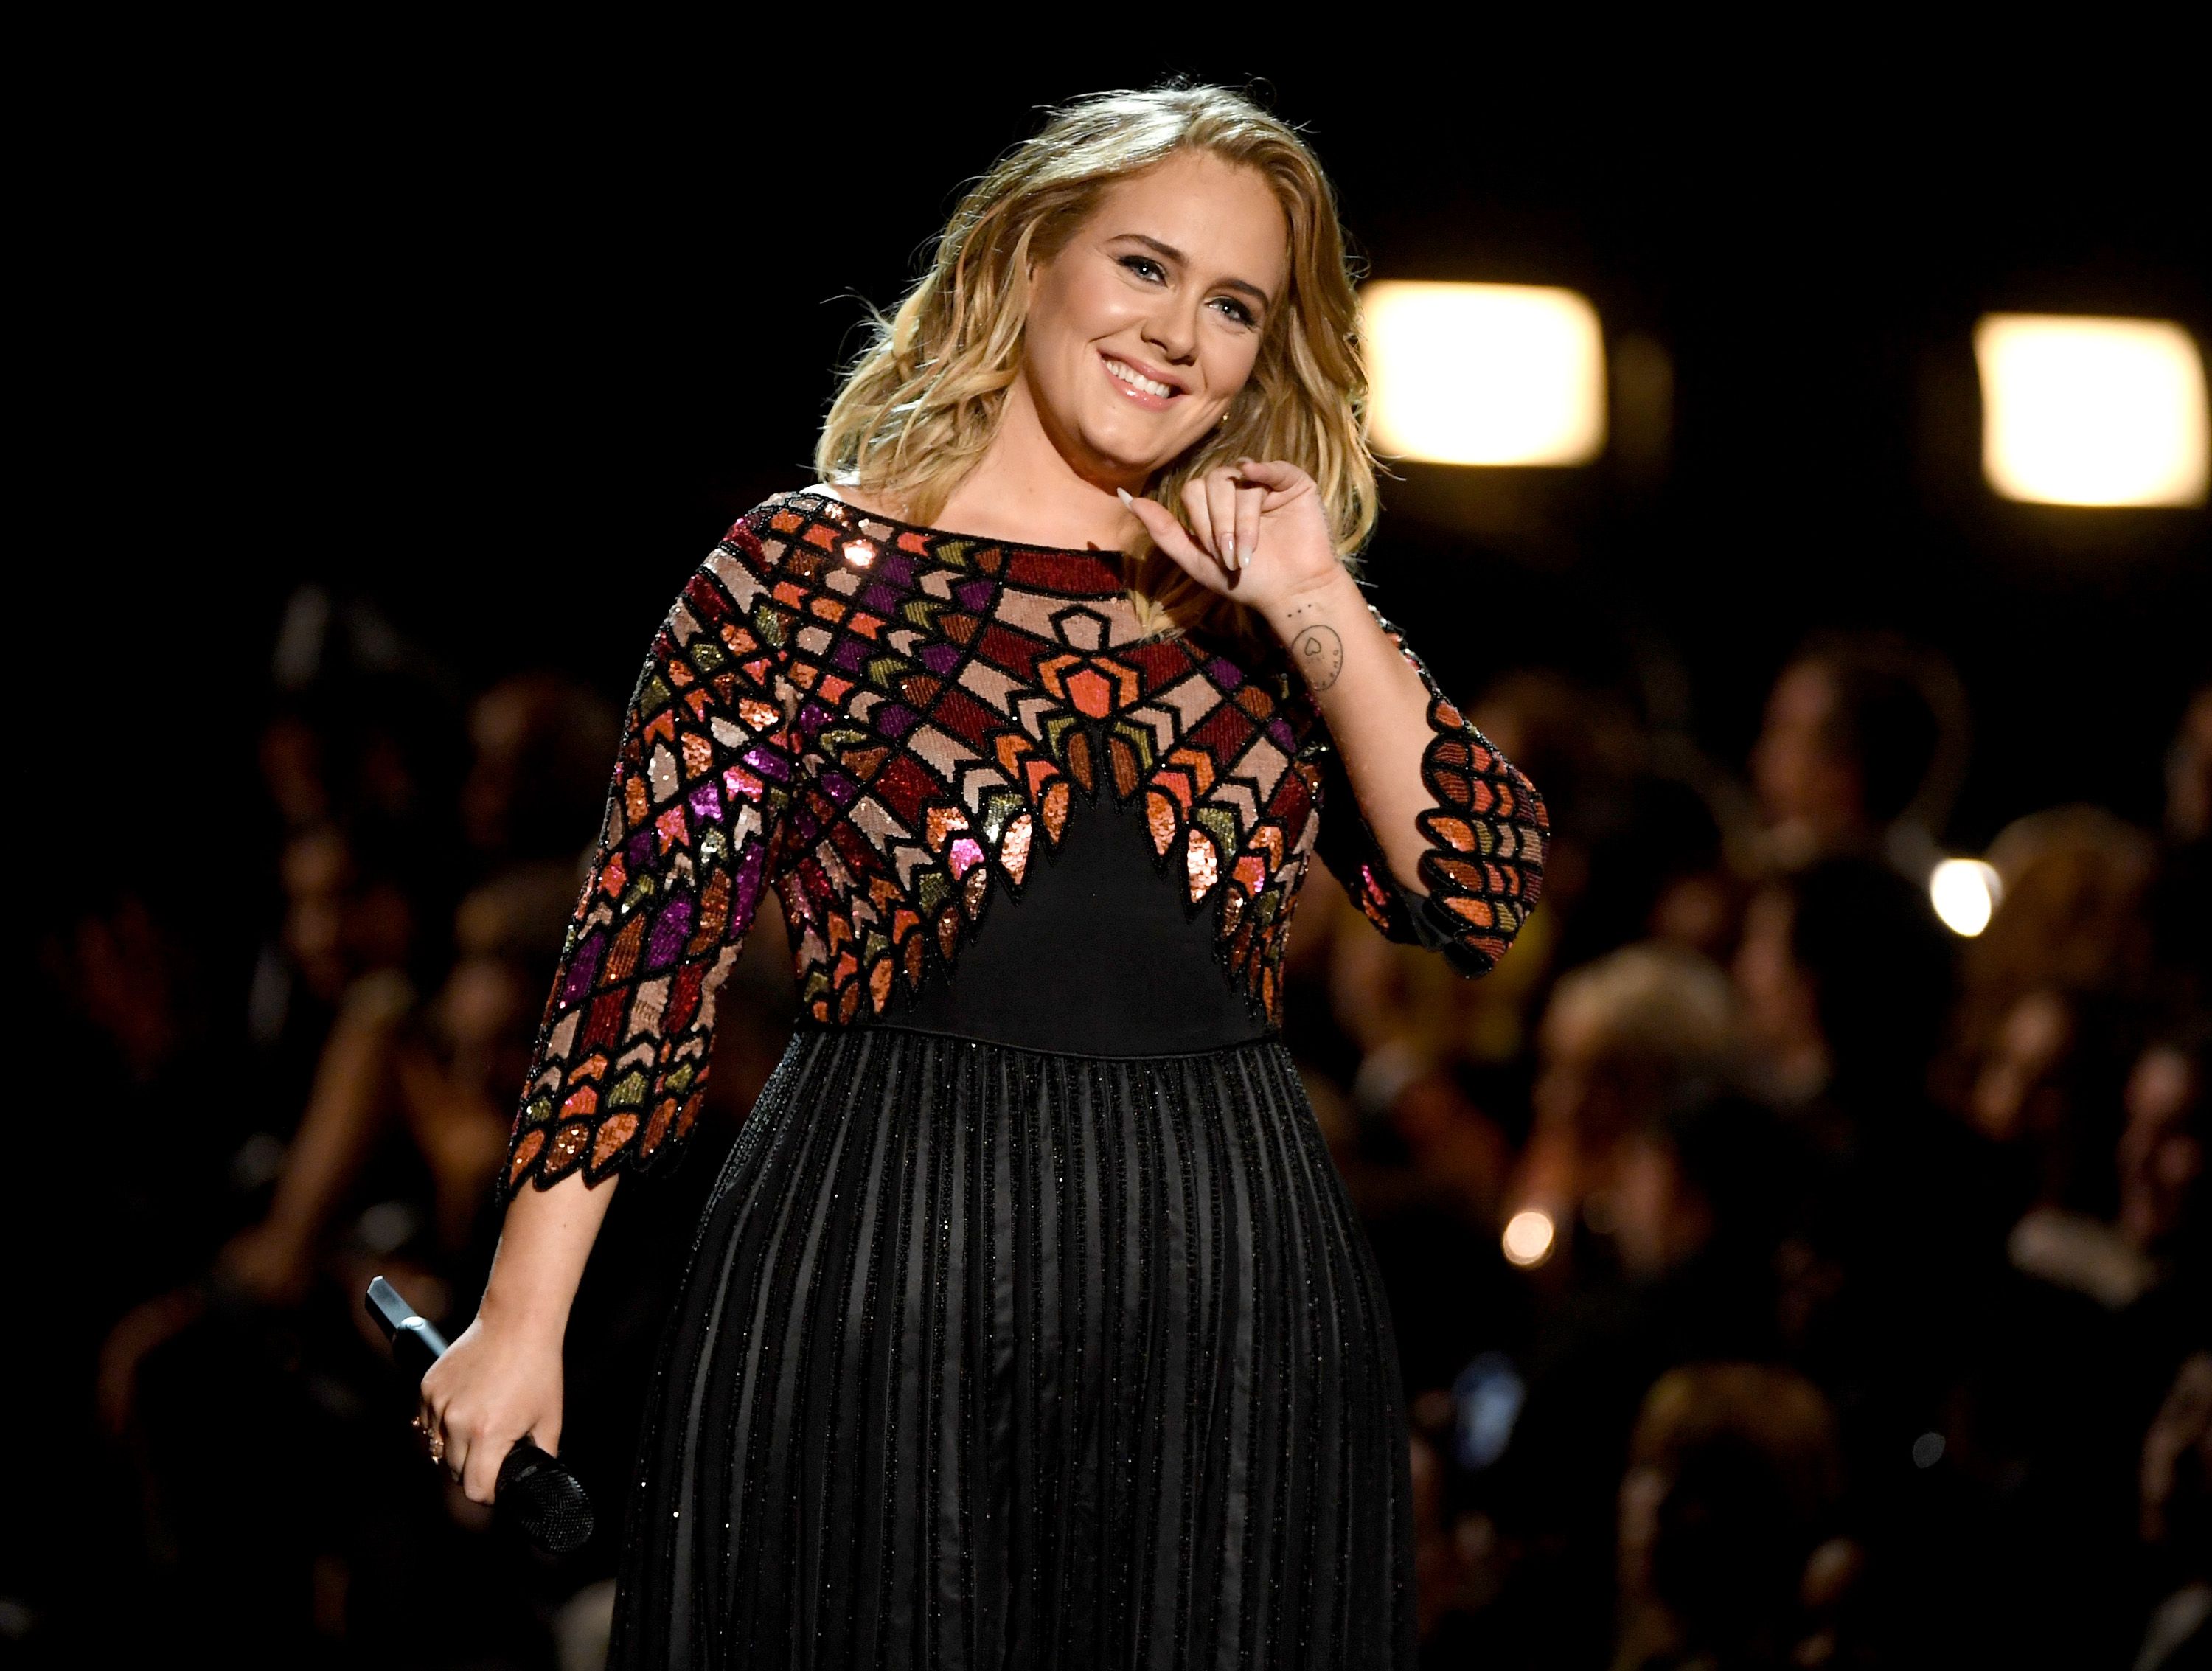 Oscar 2020: Adele presume cintura de avispa en el after party